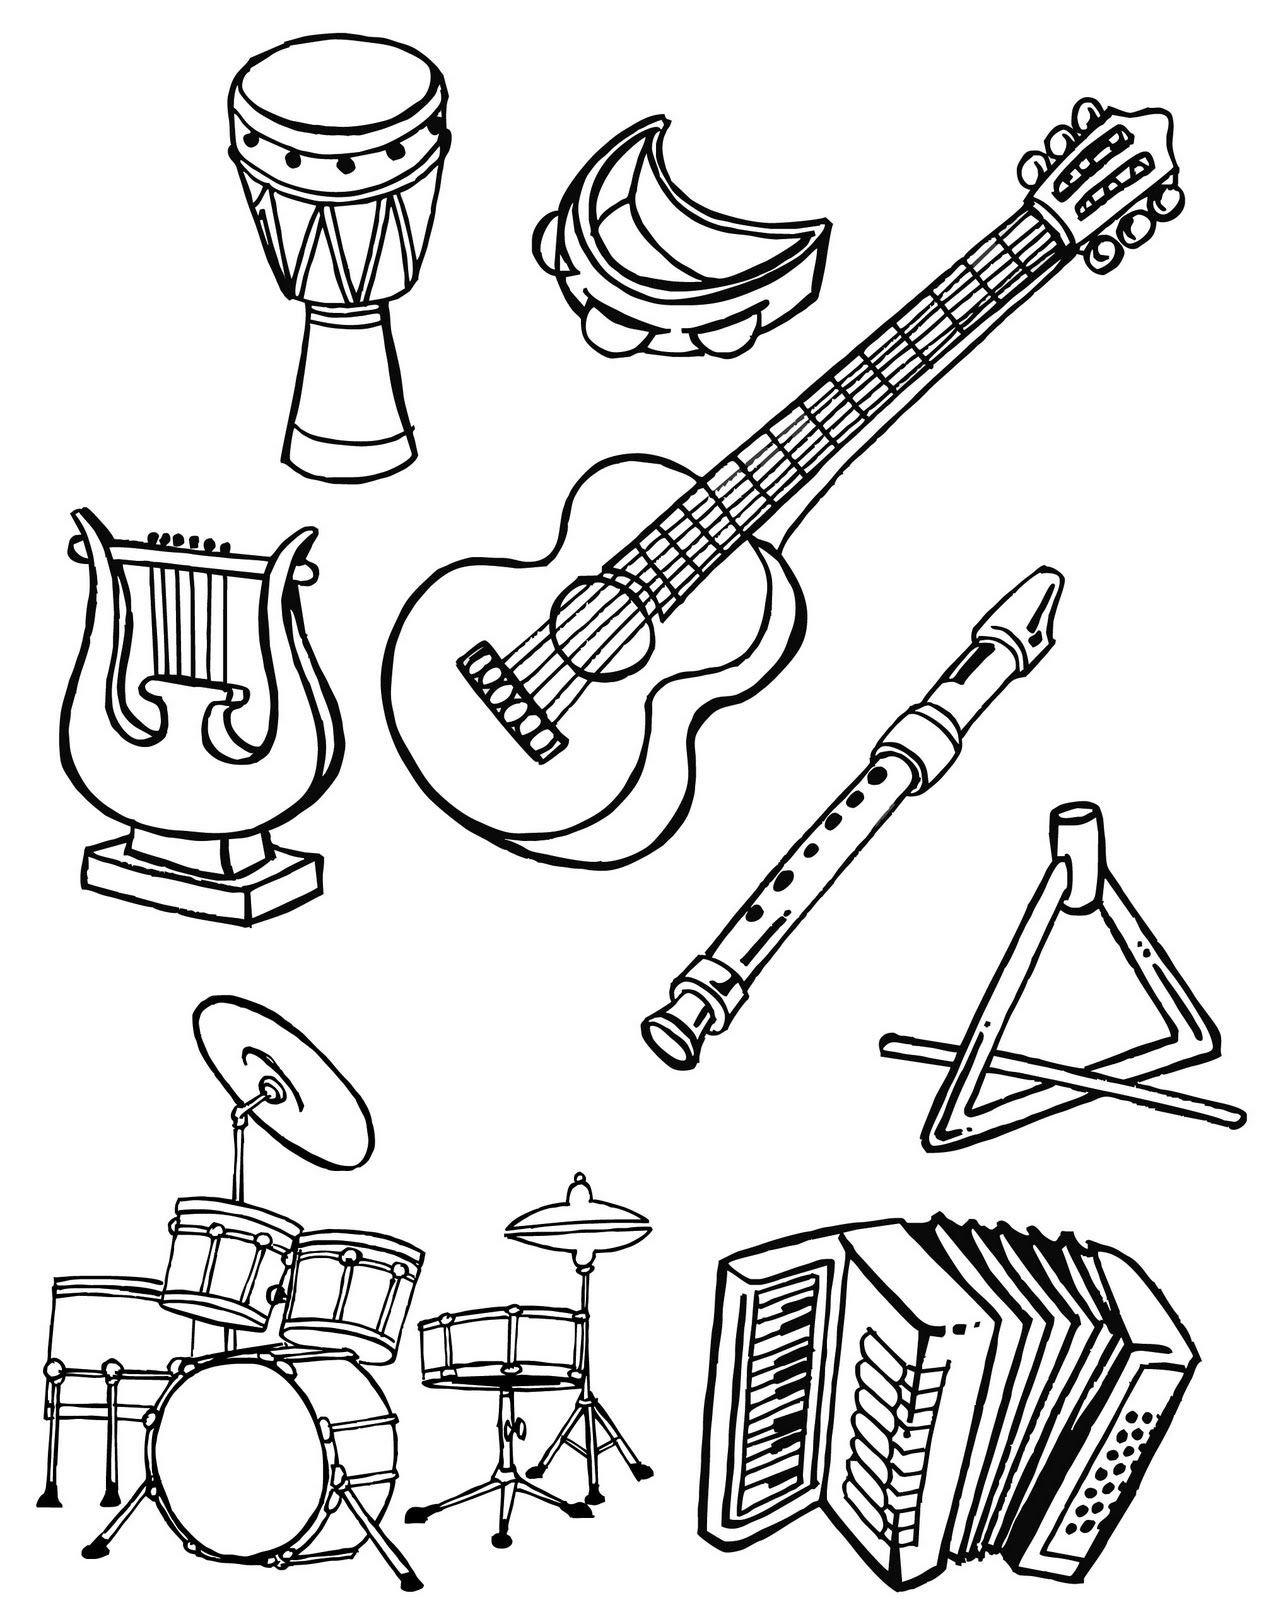 Музыкальные инструменты народов рисунки. Музыкальные инструменты раскраска. Раскраска музыкальные инструменты для детей. Раскраски муз инструментов для детей. Раскраска для малышей музыкальные инструменты.